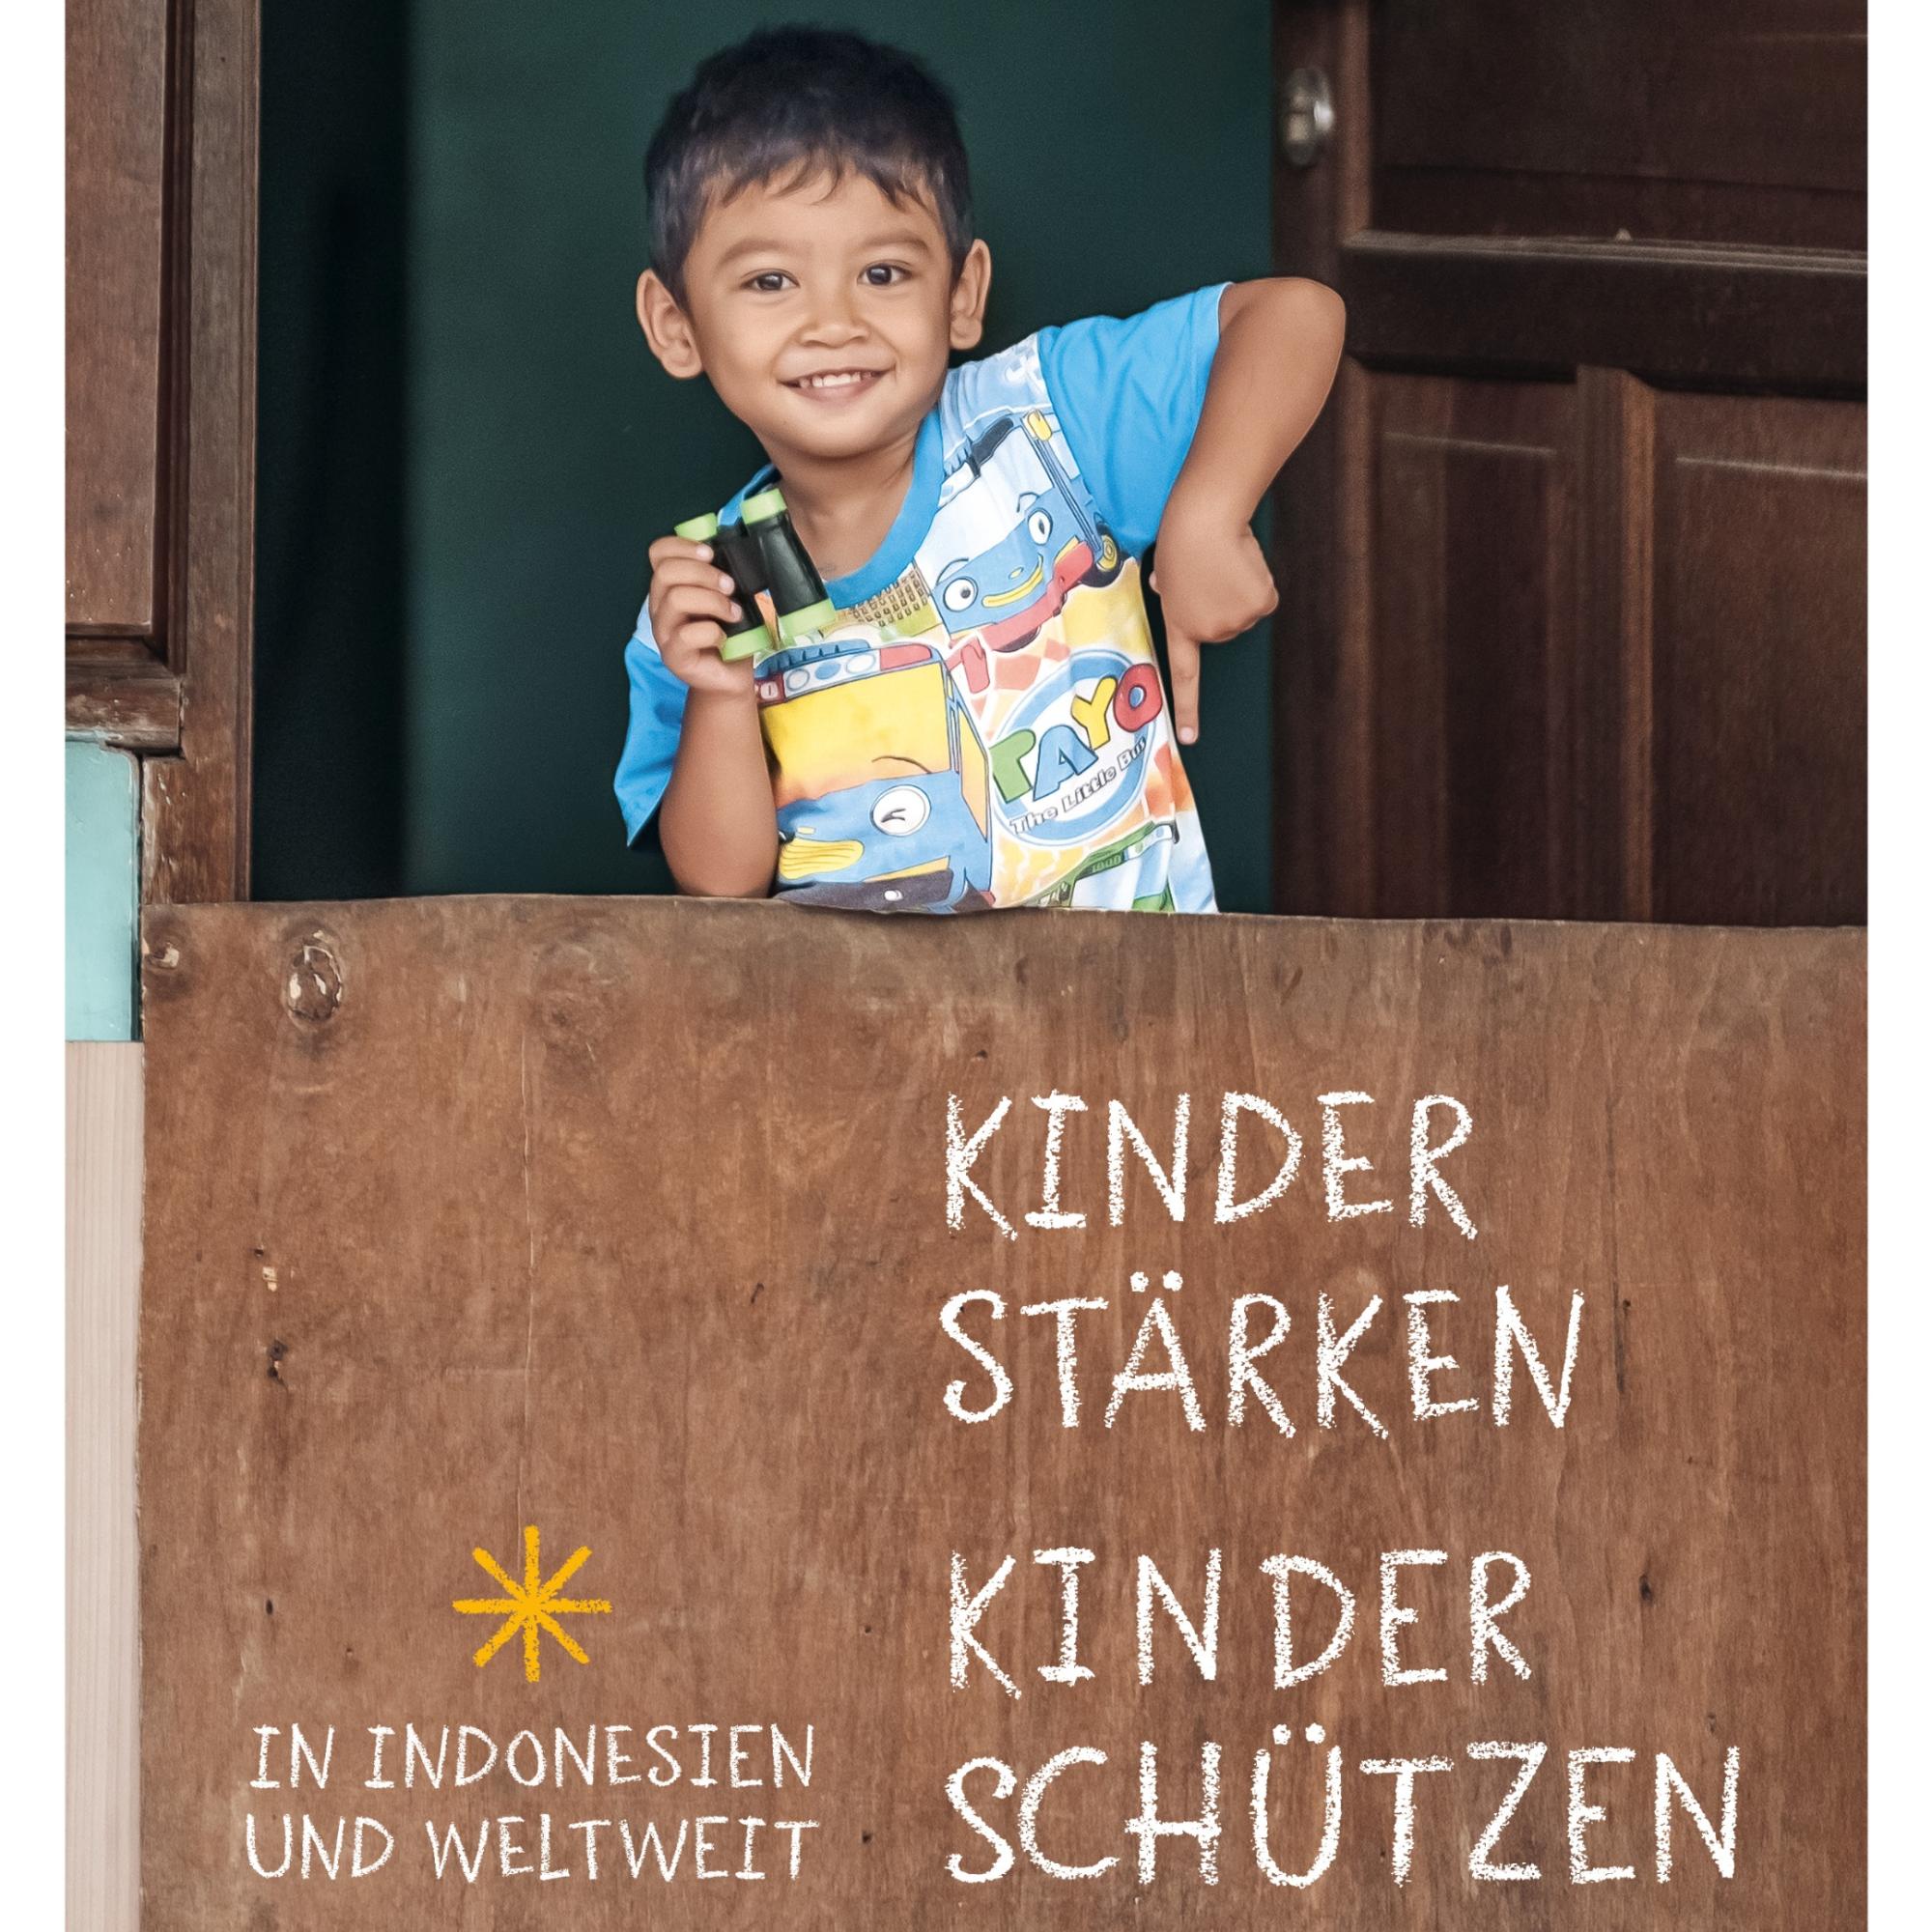 Kinder stärken, Kinder schützen - in Indonesien und weltweit